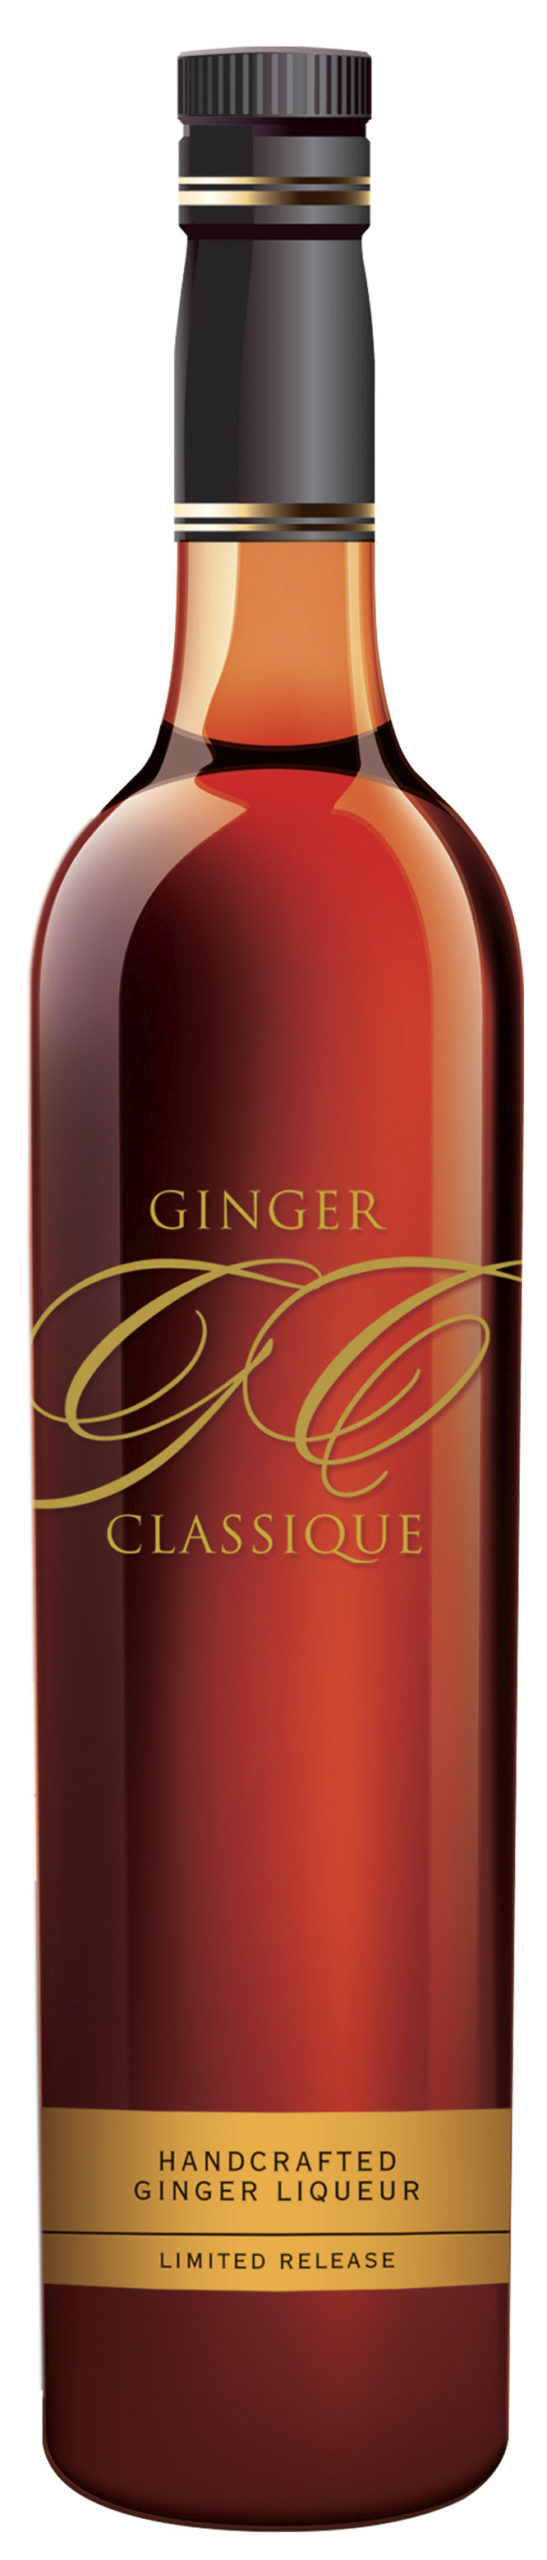 KWV Ginger Classique Liqueur